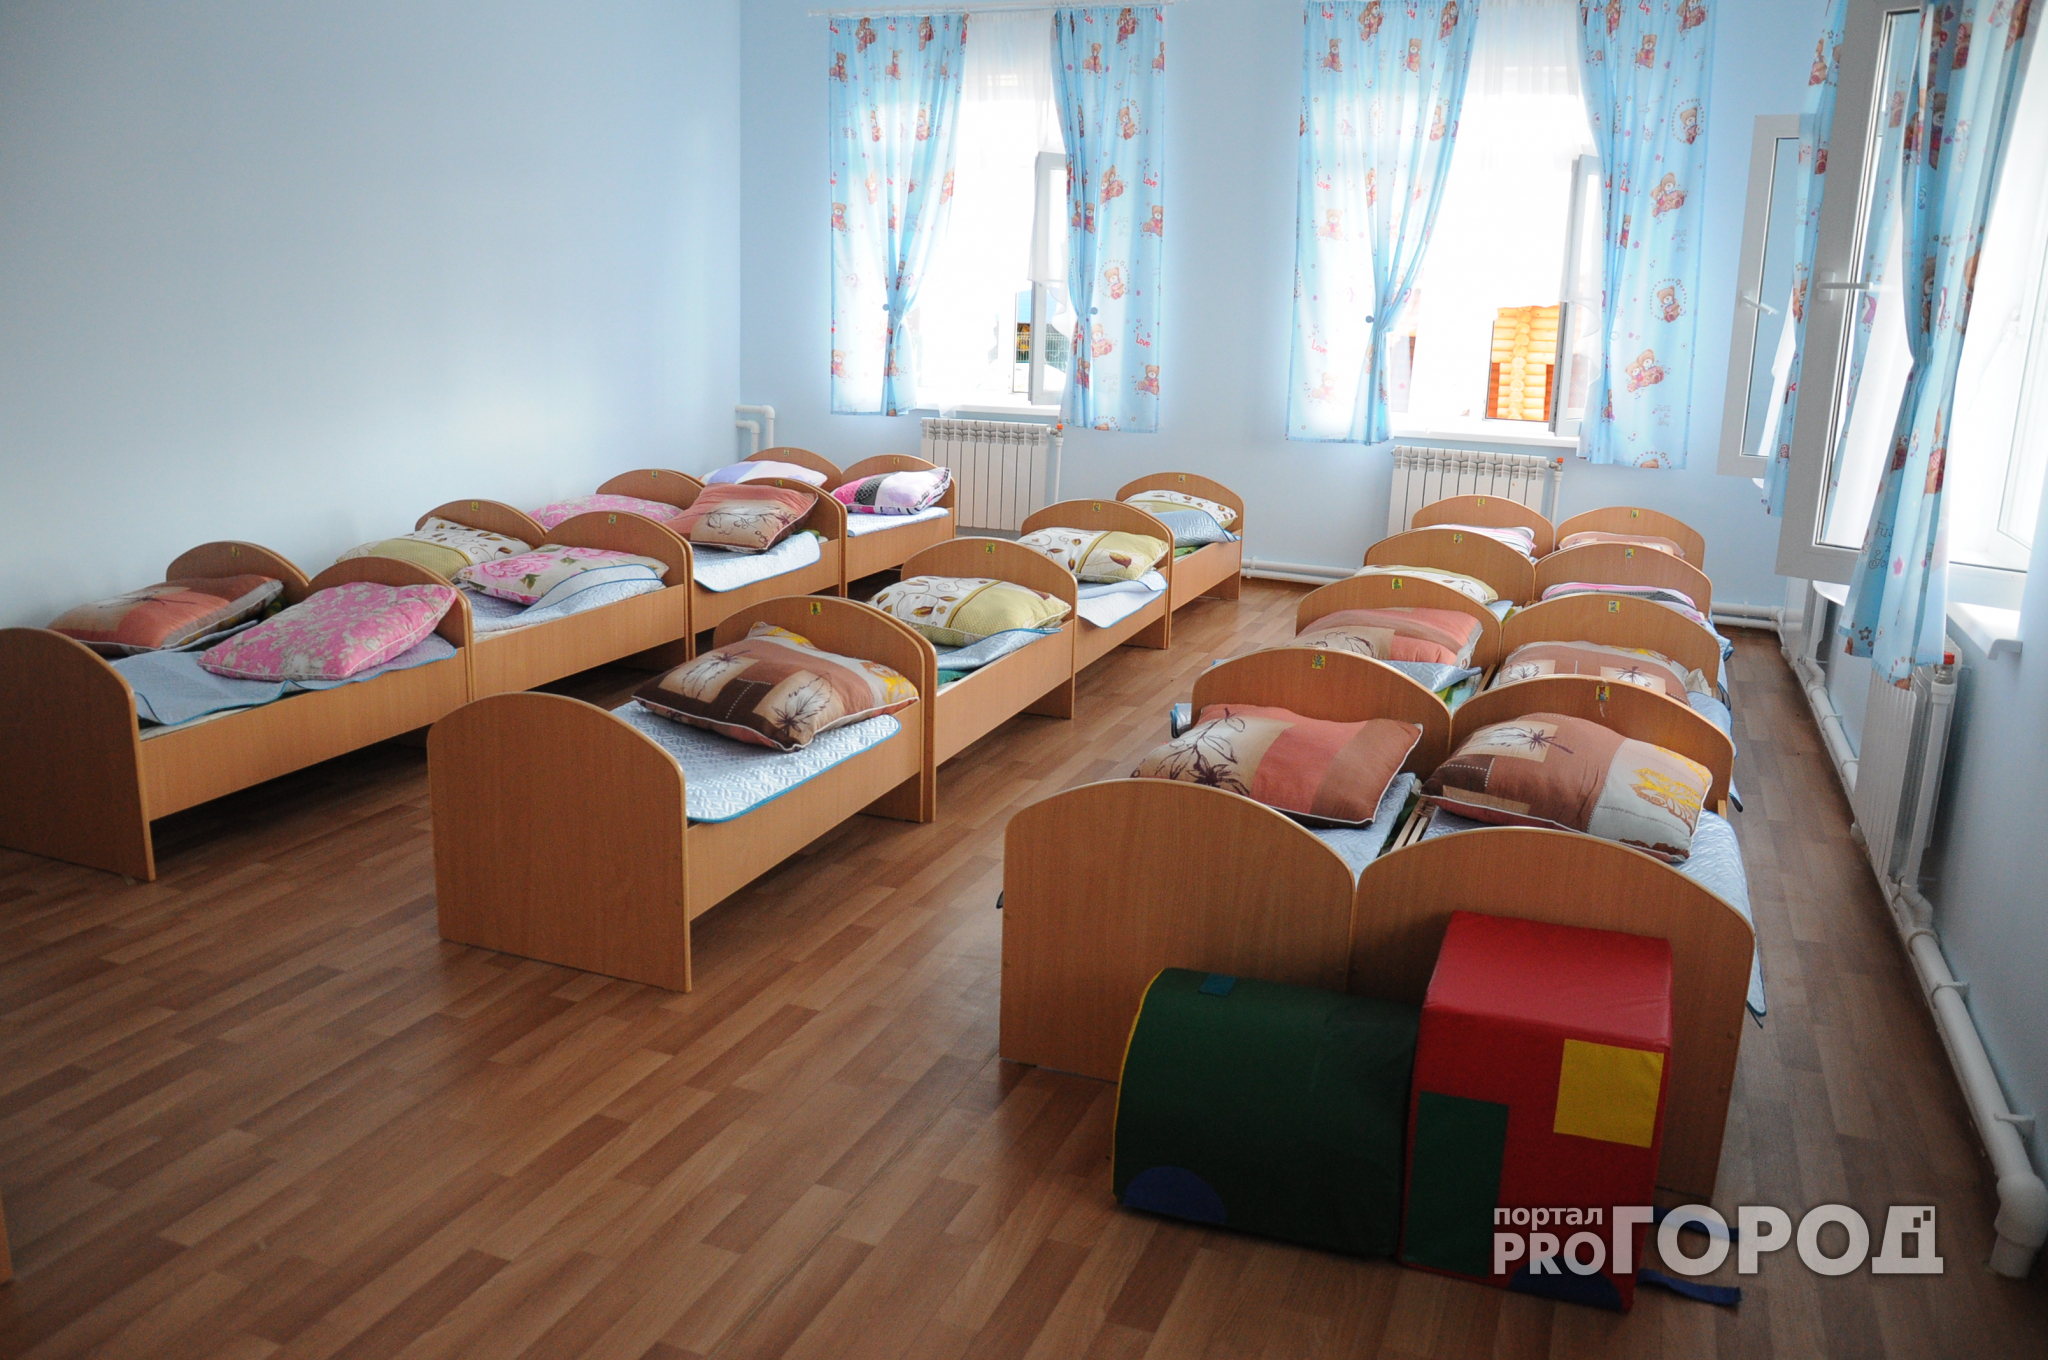 На строительство нового детского сада в Нижнем Новгороде выделят 240 миллионов рублей